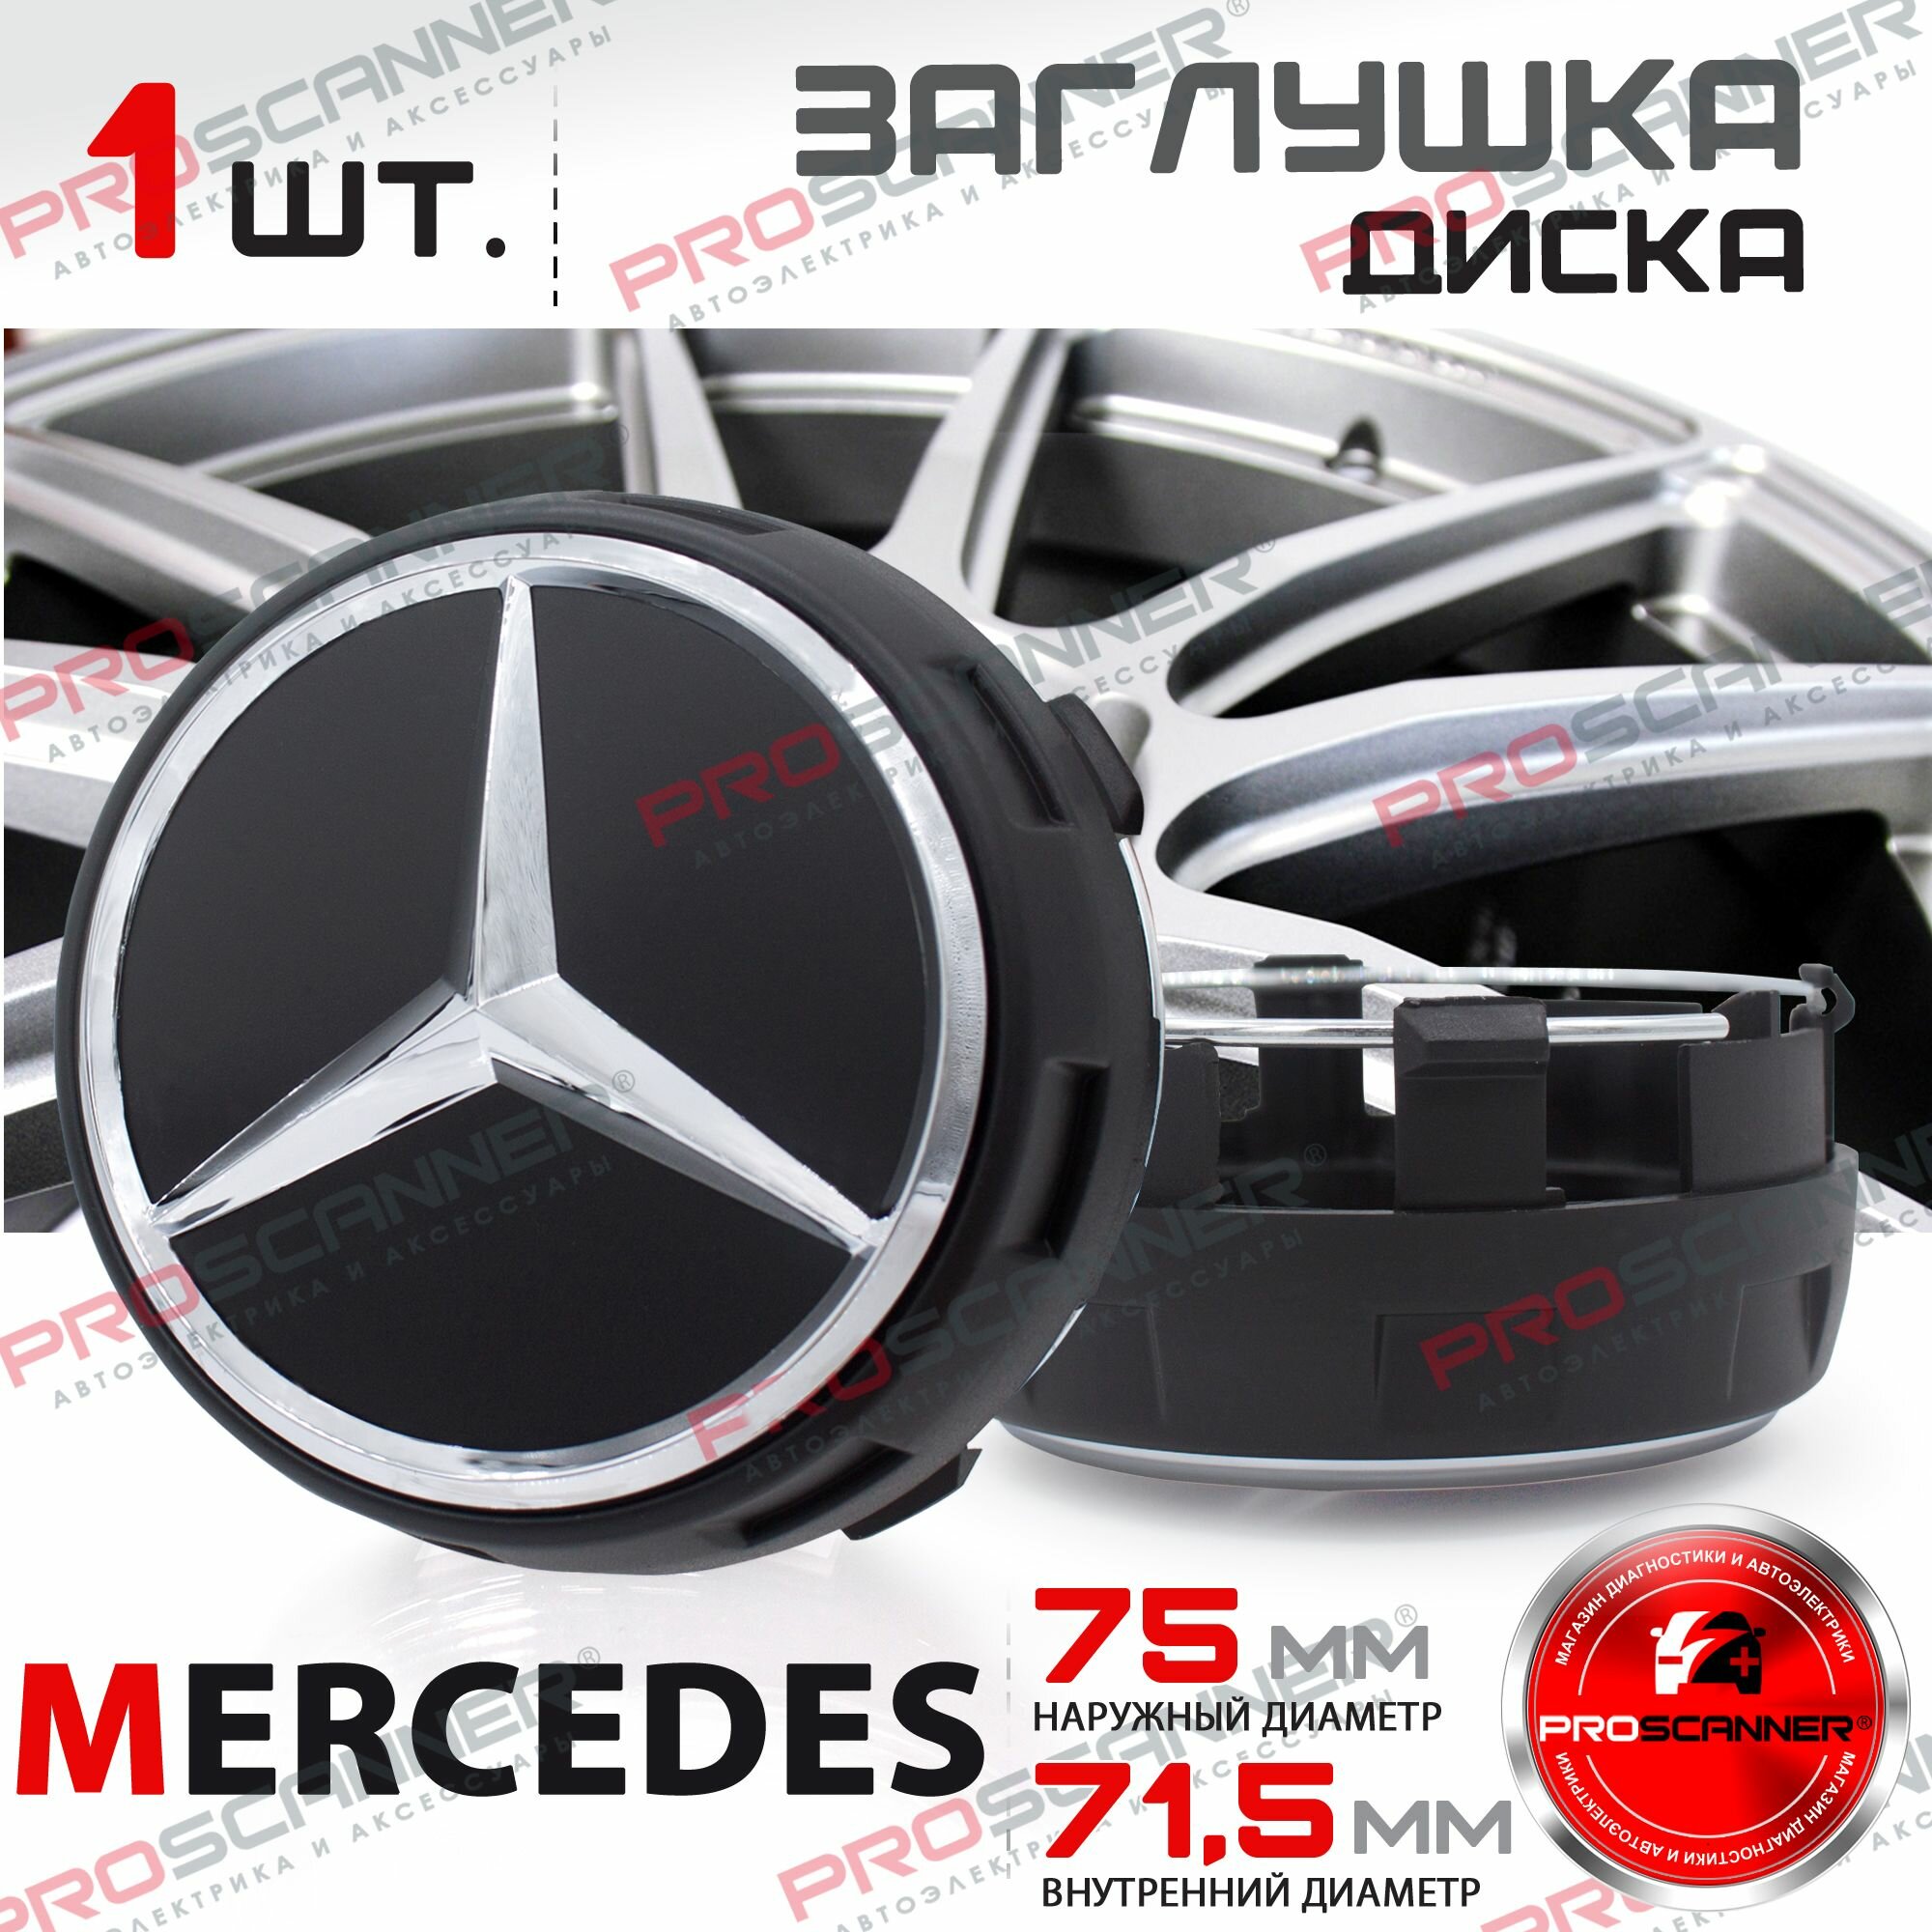 Колпачок заглушка на литой диск для Mercedes 75 мм A0004000900 - 1 штука серебро/высокие